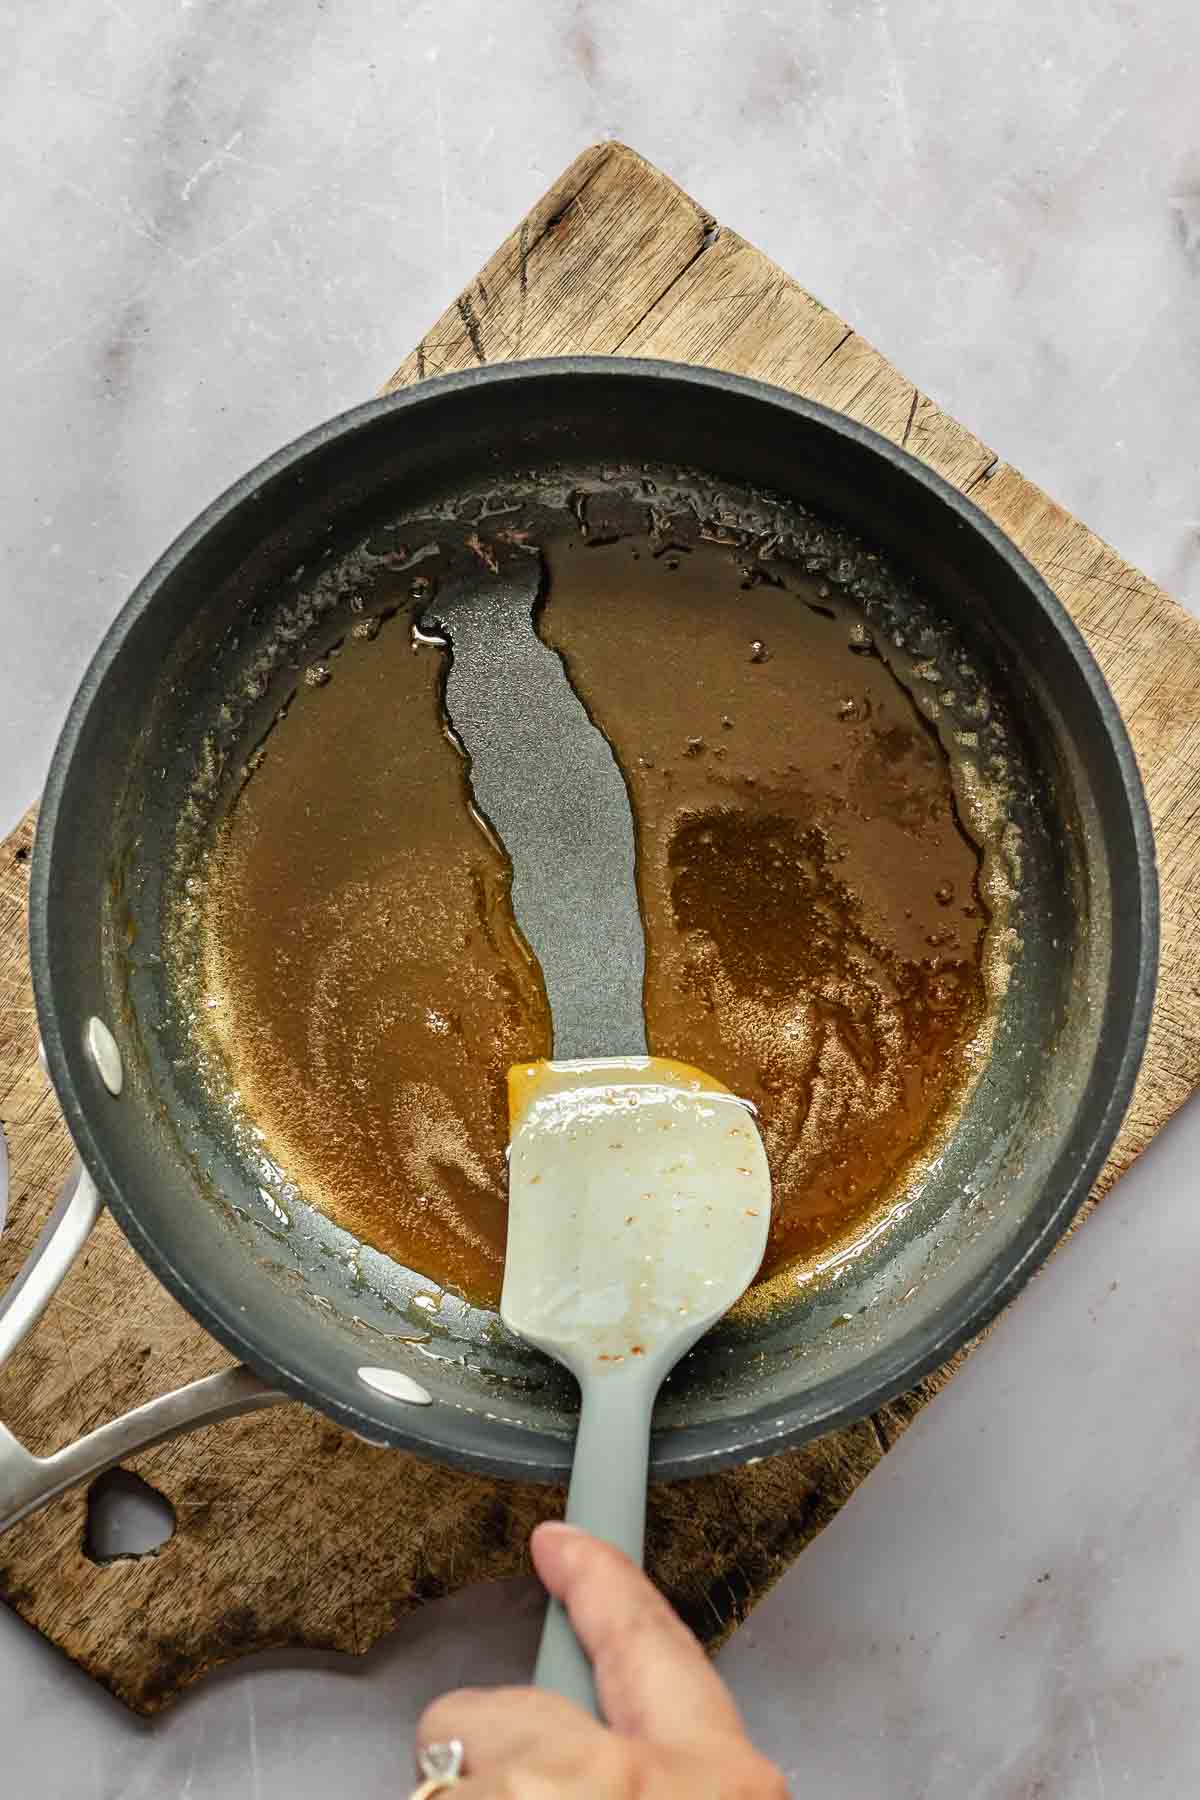 A spatula runs through liquid in a pot.